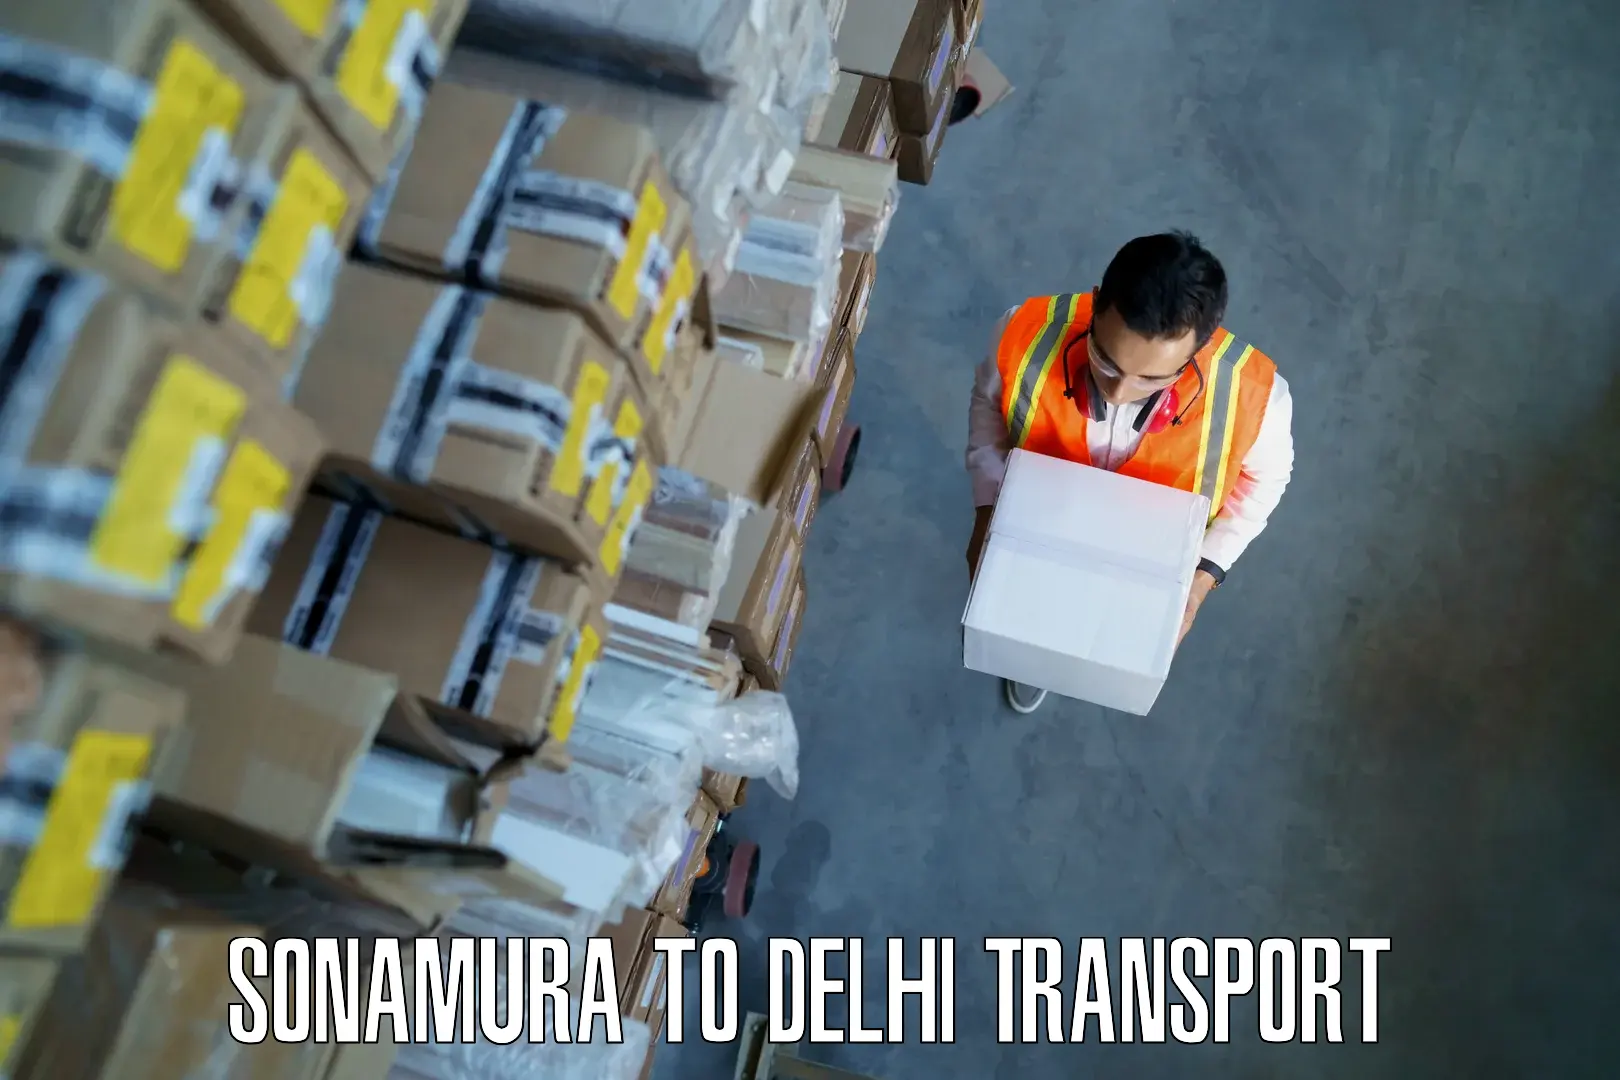 Bike shipping service Sonamura to Delhi